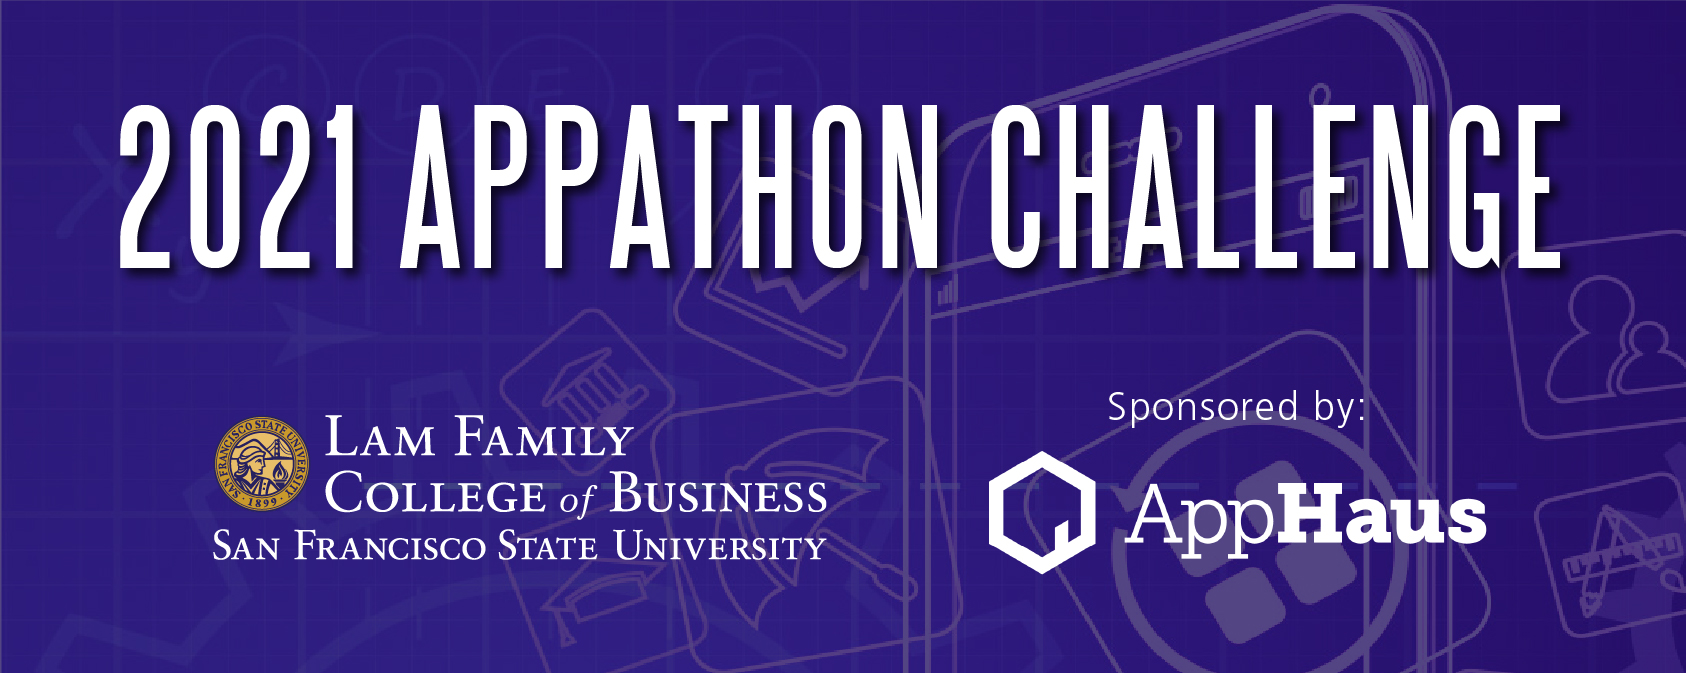 Mobile Appathon Challenge